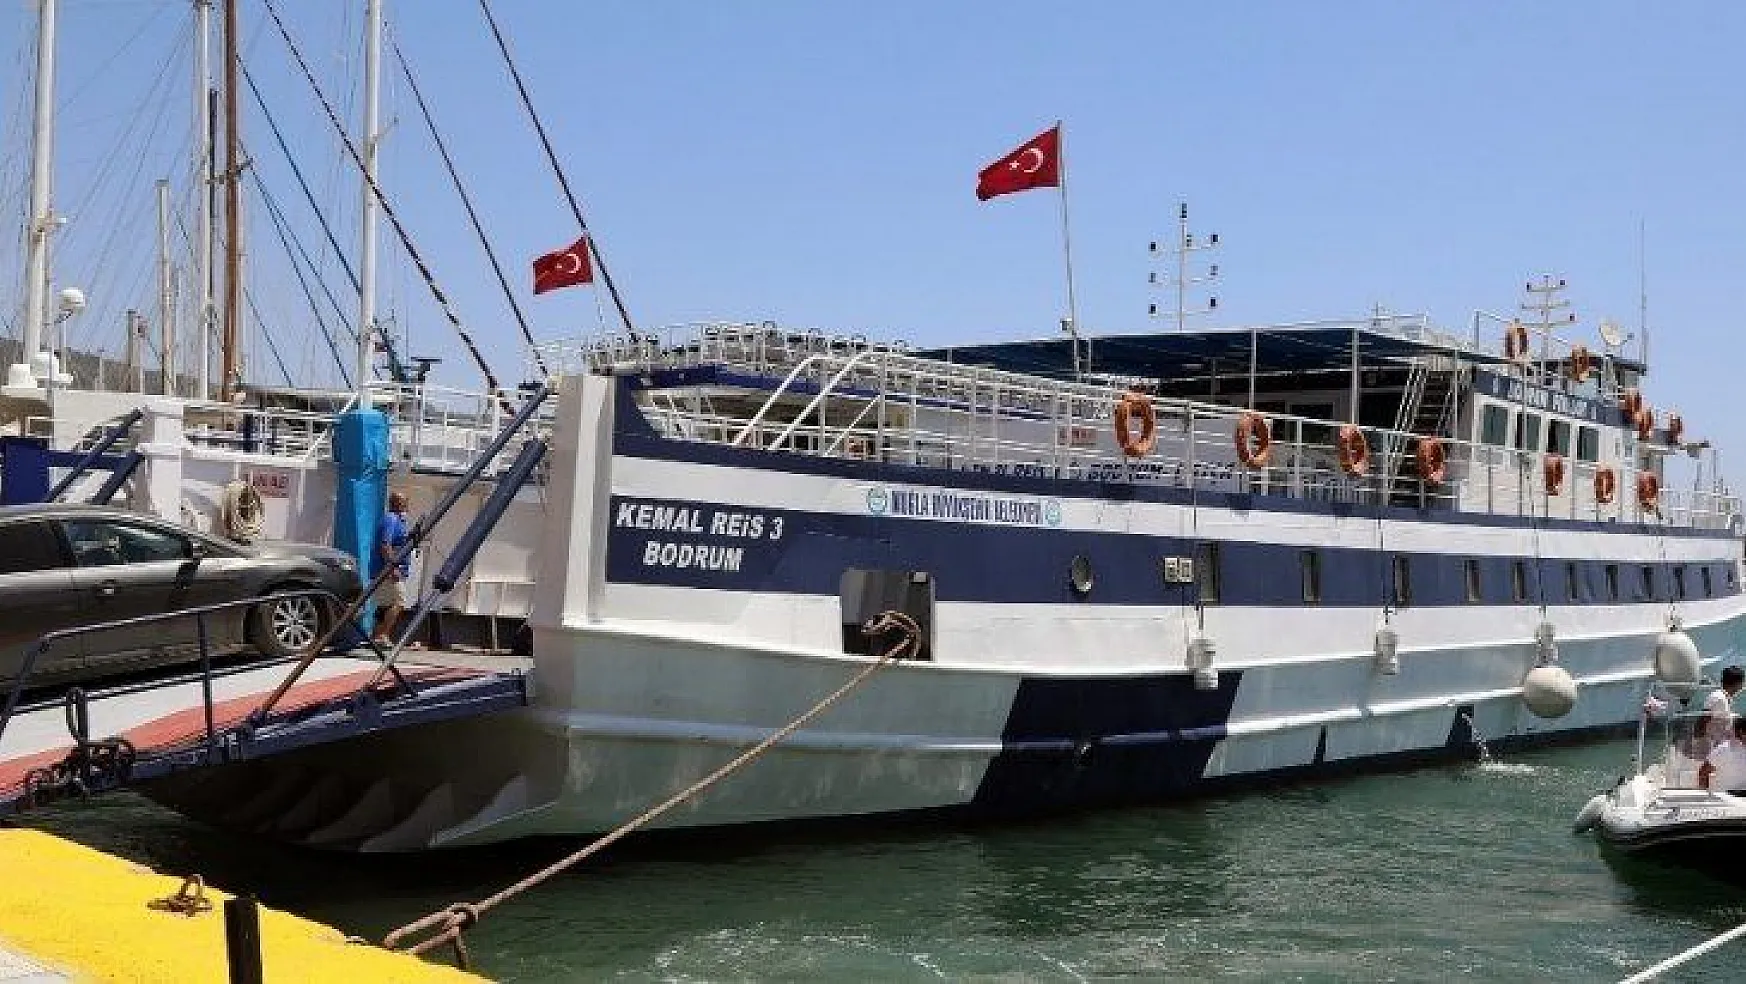 Bodrum-Datça feribot seferleri arttırıldı